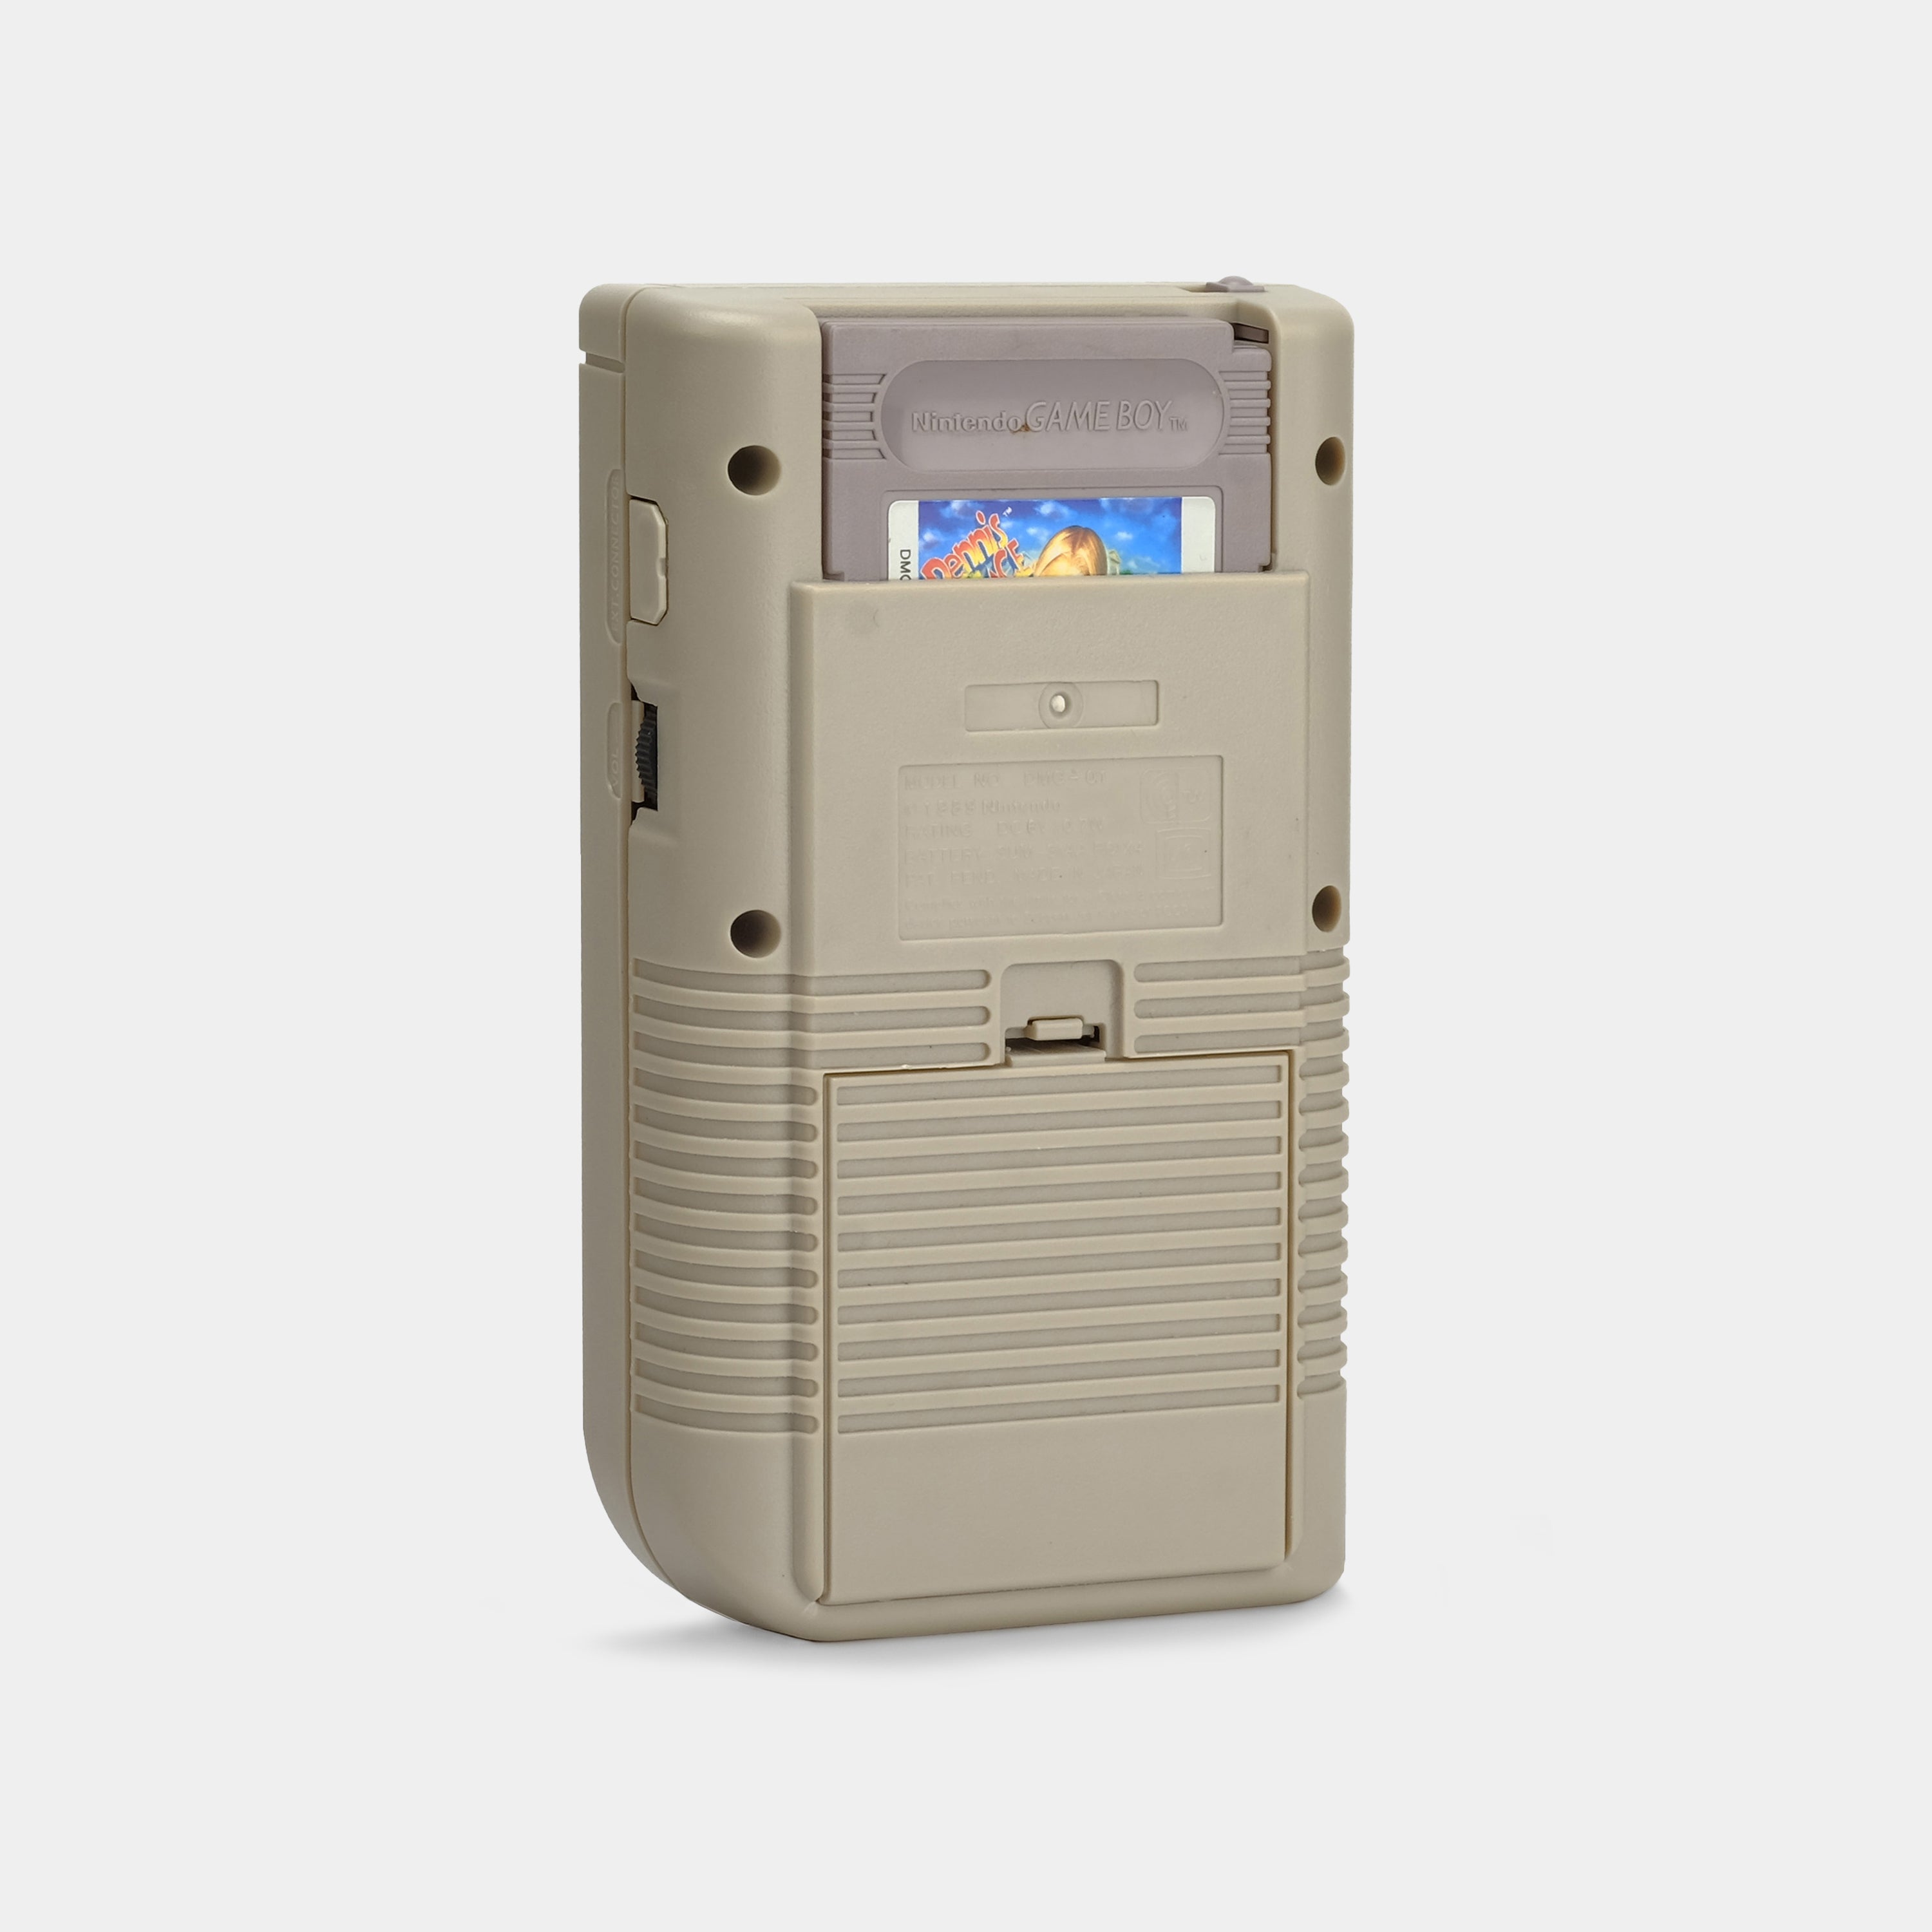 Nintendo Game Boy Original Game Console